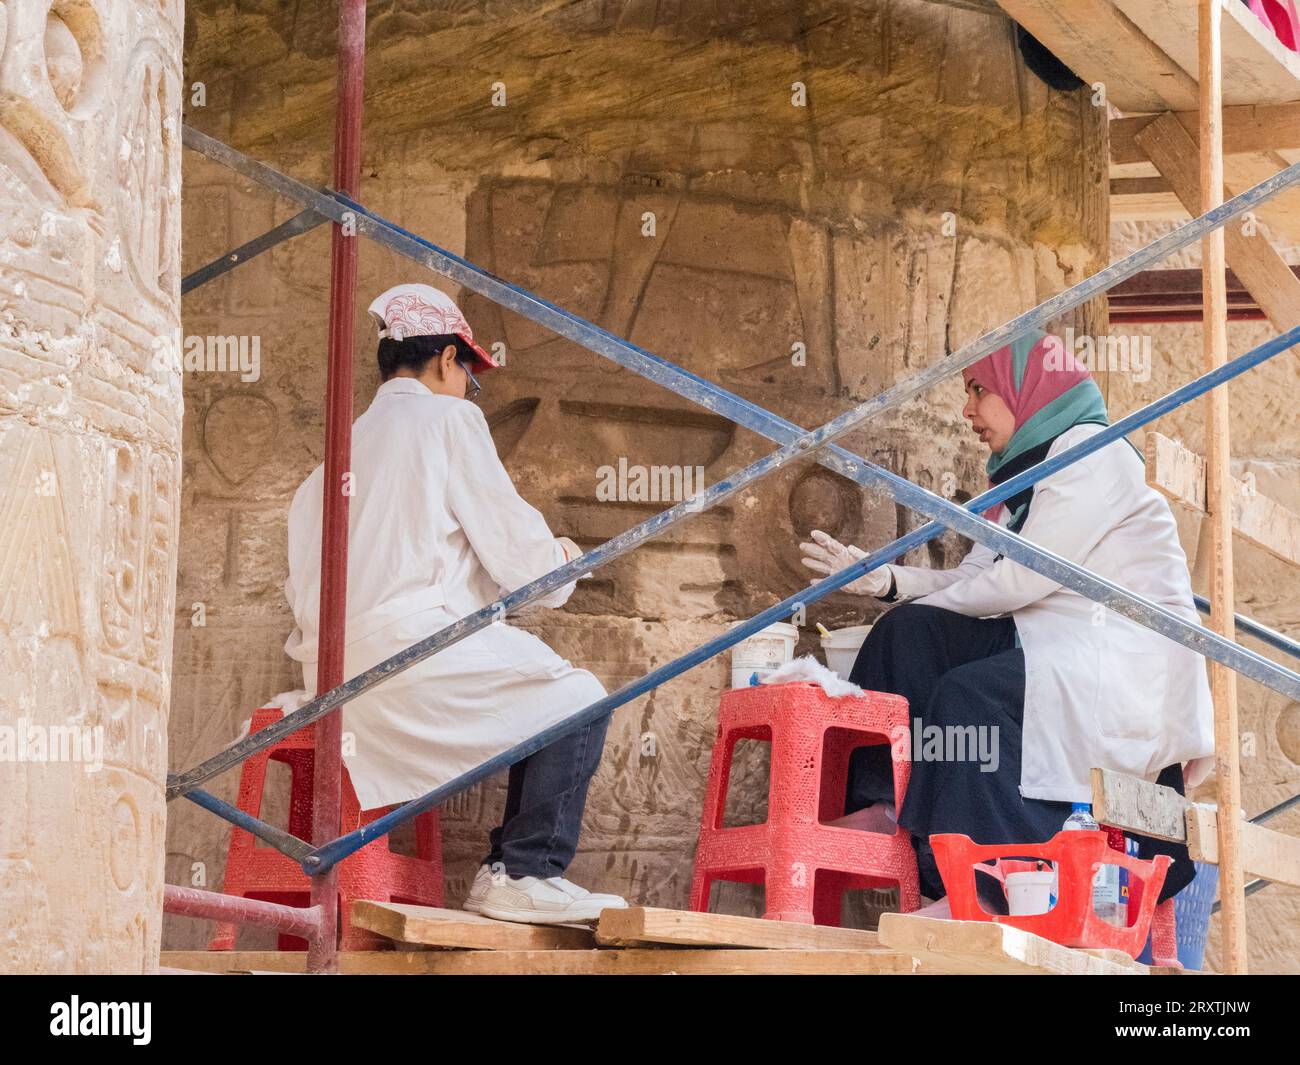 Les ouvriers du complexe du temple de Karnak, un vaste mélange de temples, de pylônes, de chapelles et d'autres bâtiments, Louxor, Égypte, Afrique du Nord, Afrique Banque D'Images